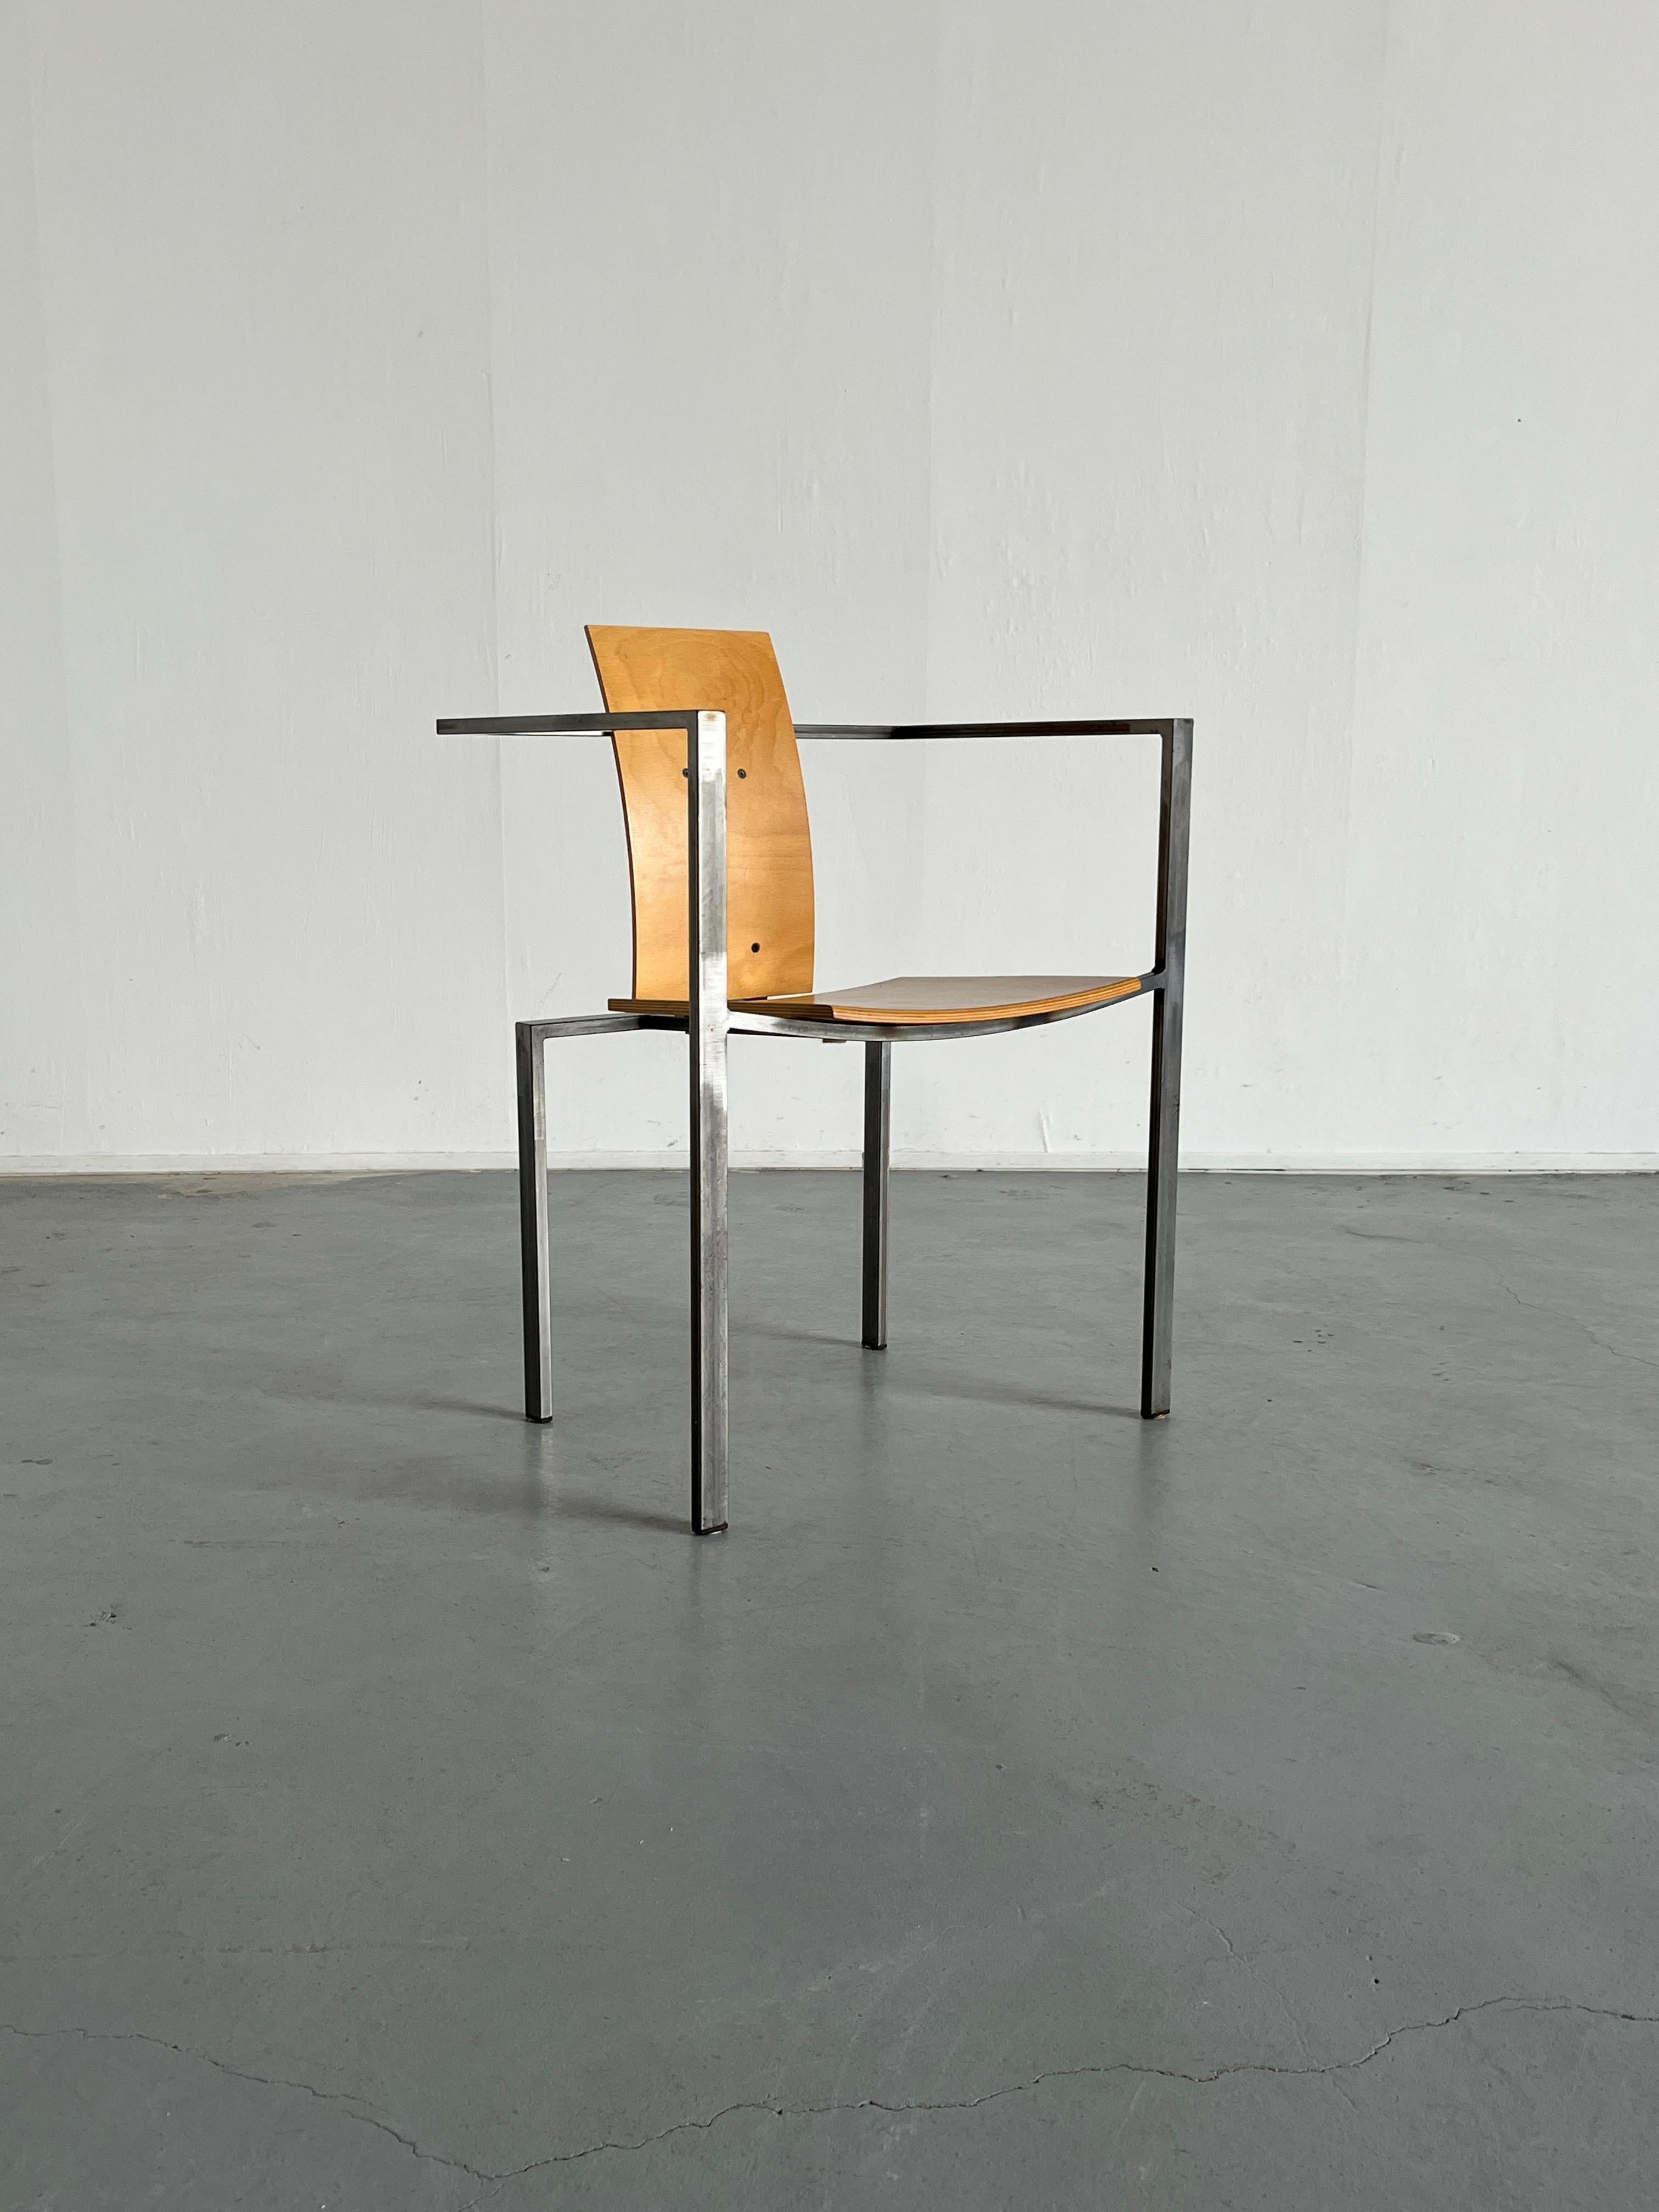 Ein postmoderner Stuhl aus Stahl und Sperrholz, der in den 1980er Jahren in Deutschland von Karl Friedrich Förste für KFF, seine eigene Produktionsfirma, entworfen wurde. 
Einzigartiges, geometrisches und von Memphis beeinflusstes Design, im